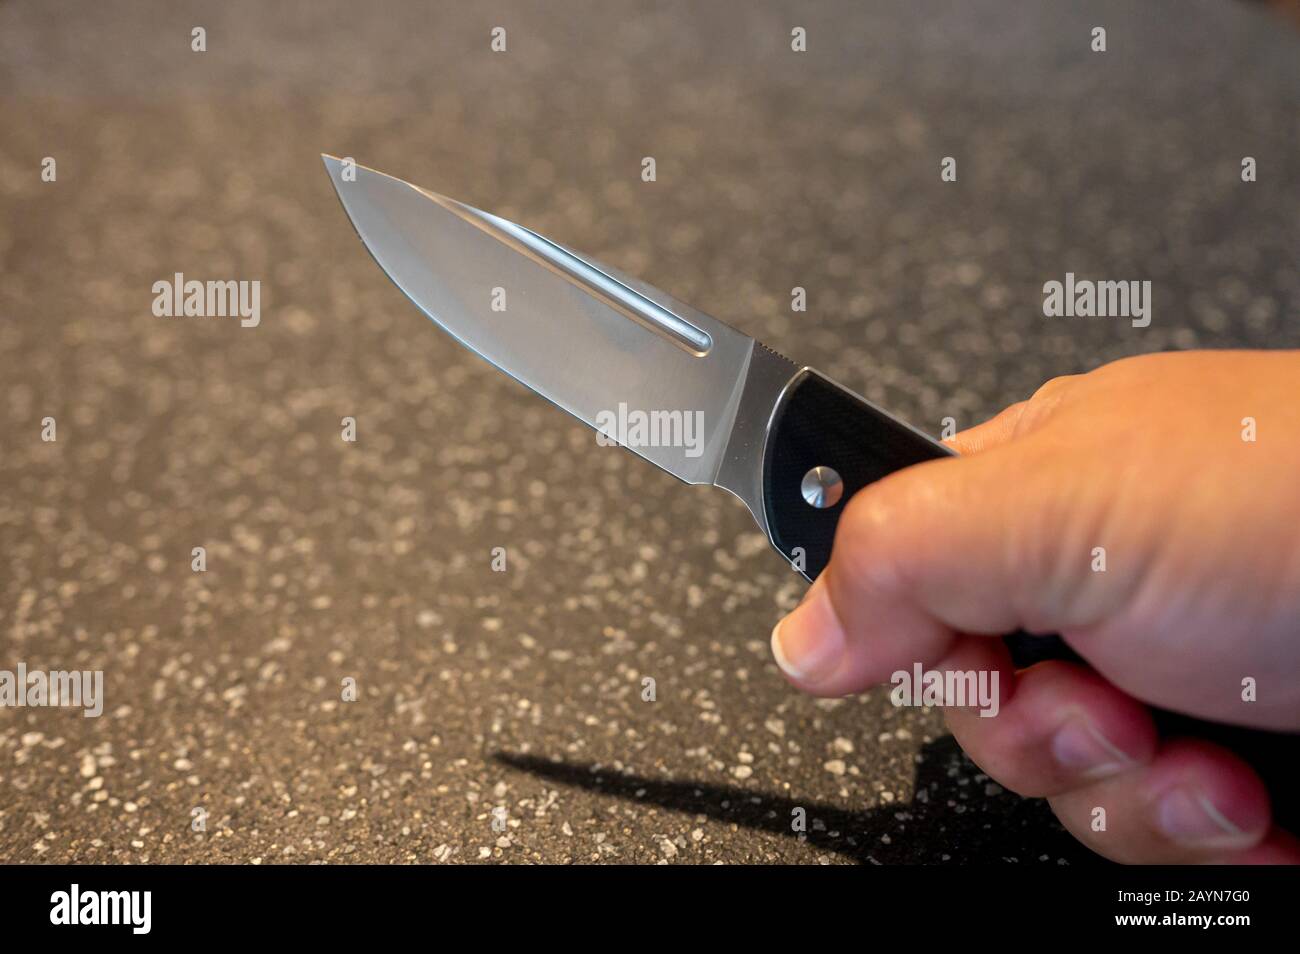 Symbole, Symbolbild, Eine Faust haelt ein Messer in der Hand. Stock Photo